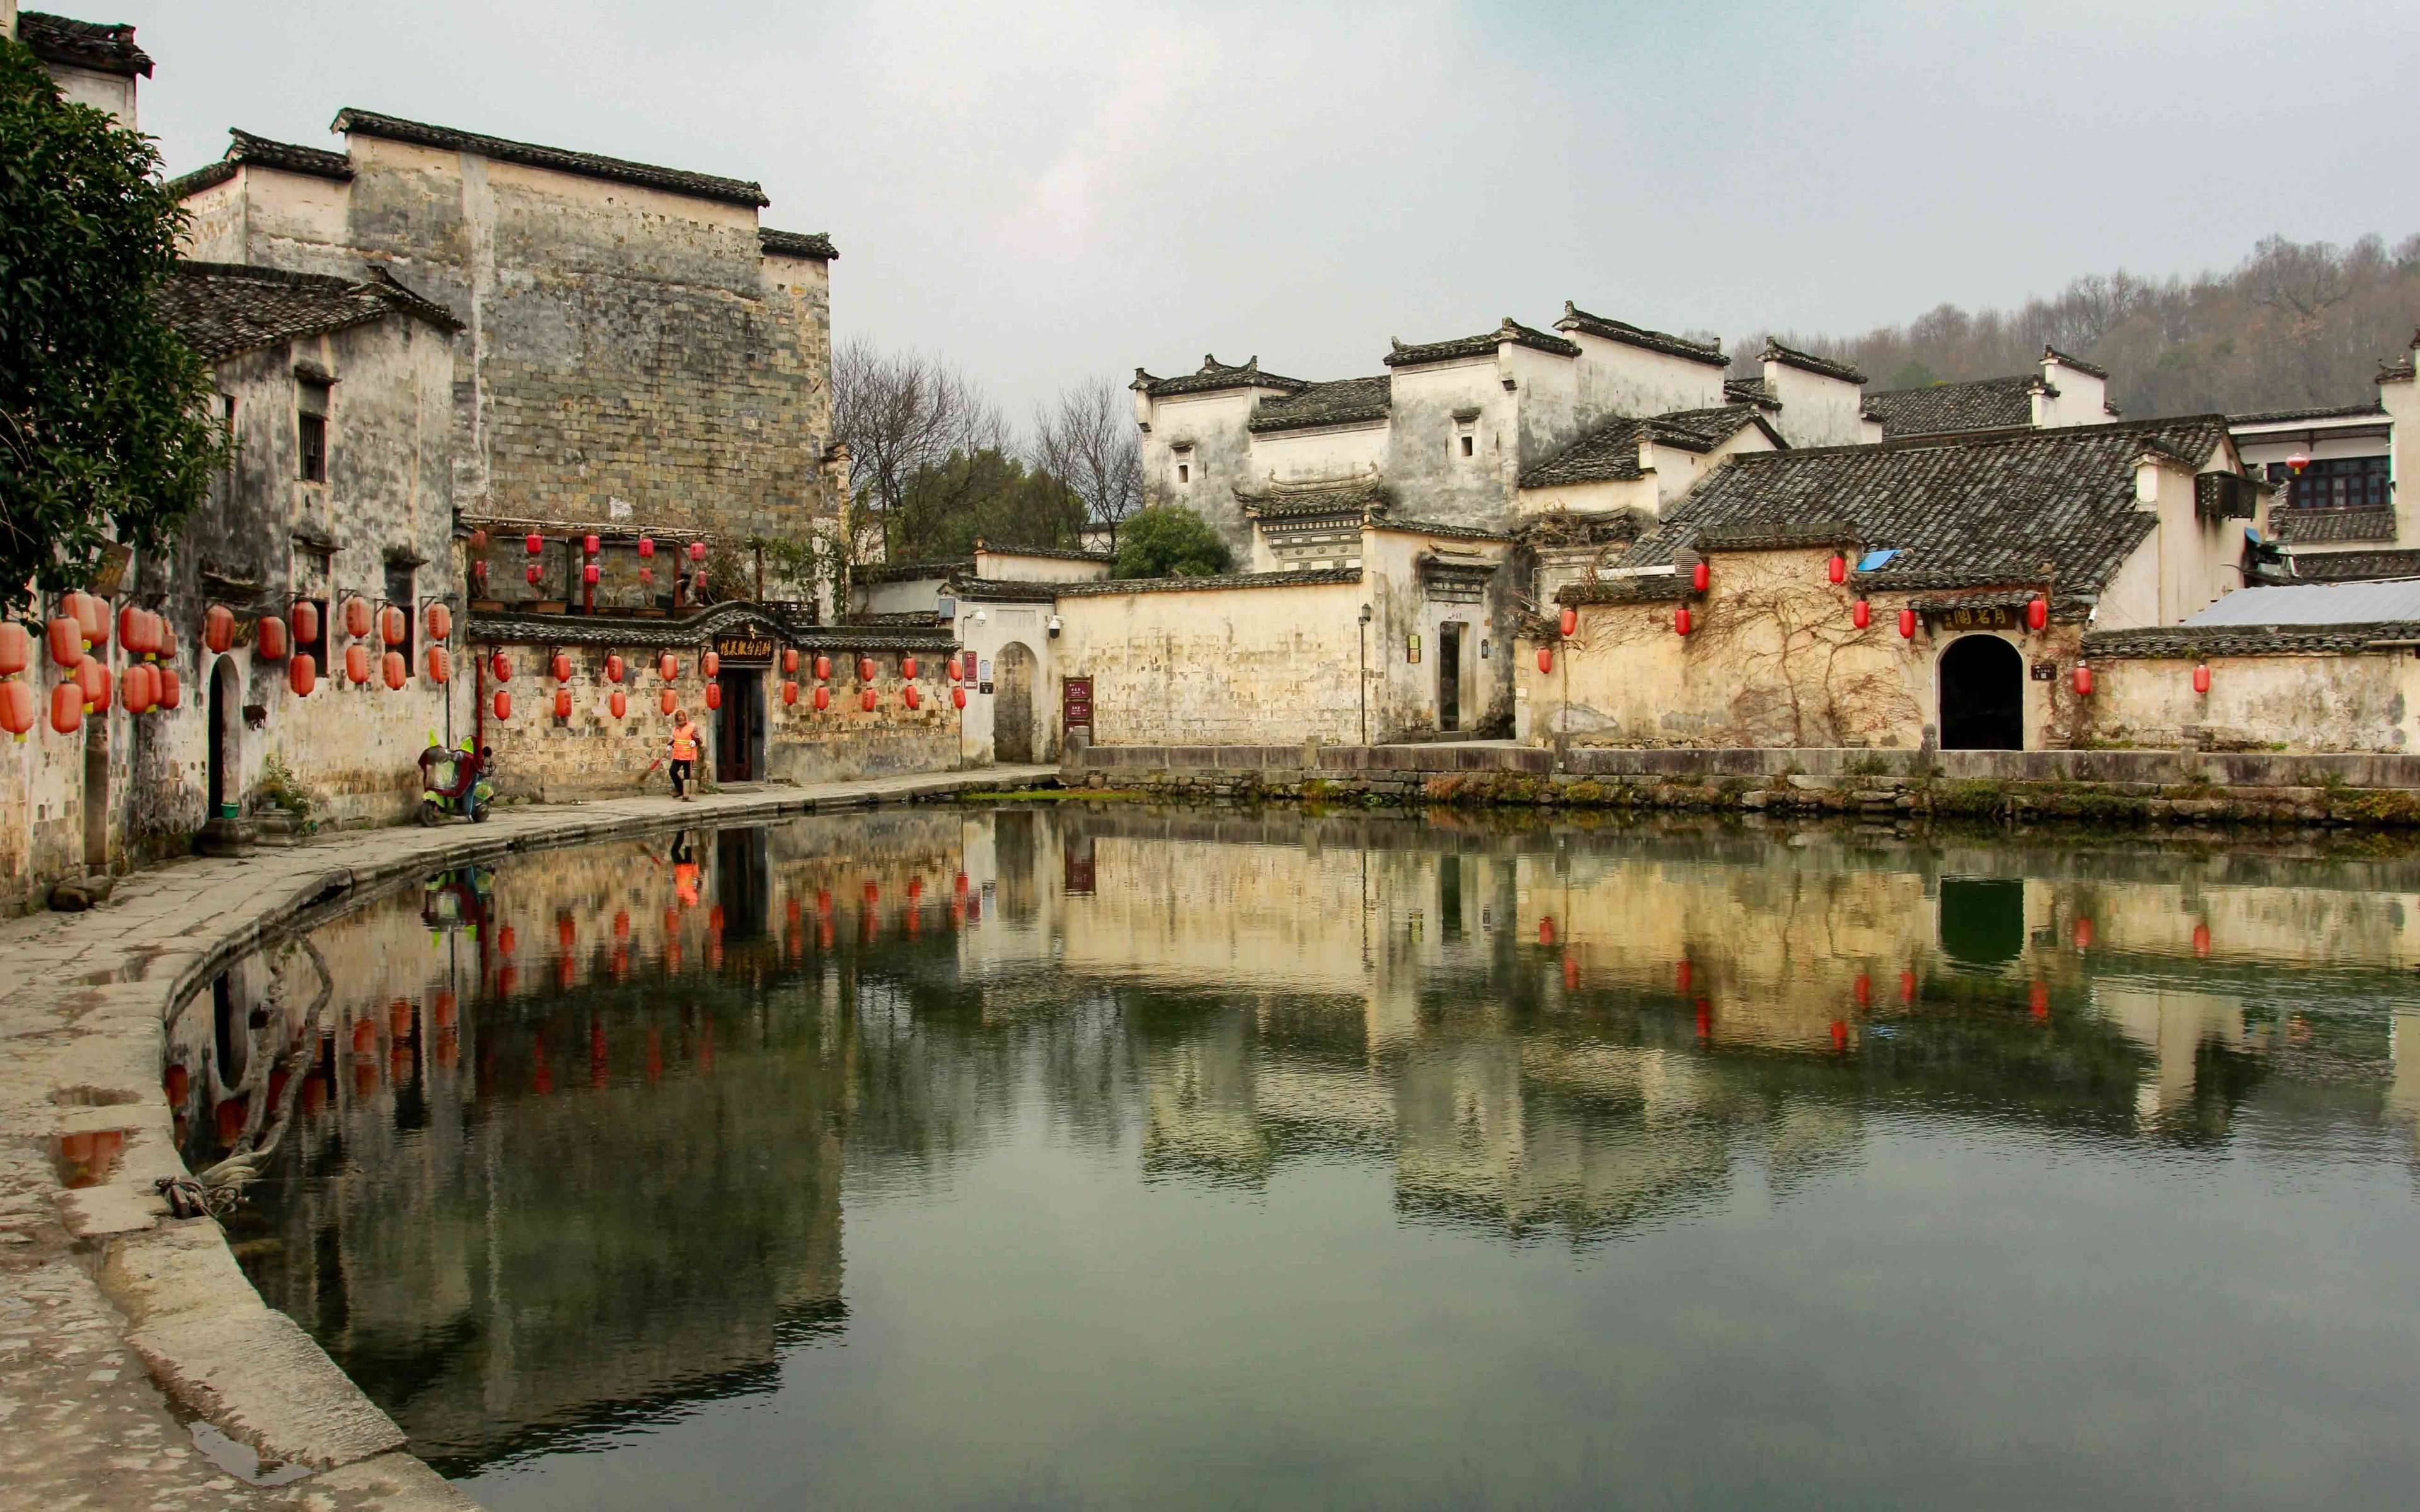 Visita agli antichi villaggi di Hongcun e Xidi